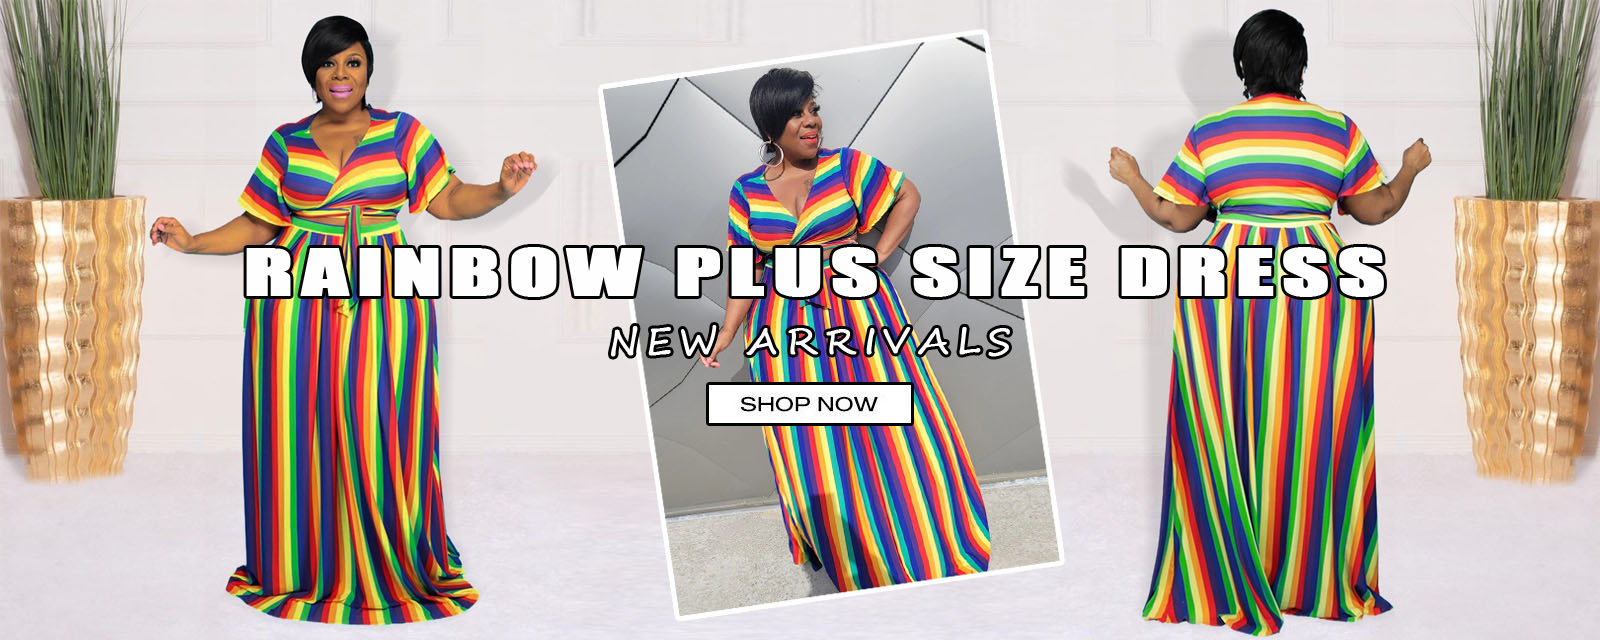 rainbow plus size dress